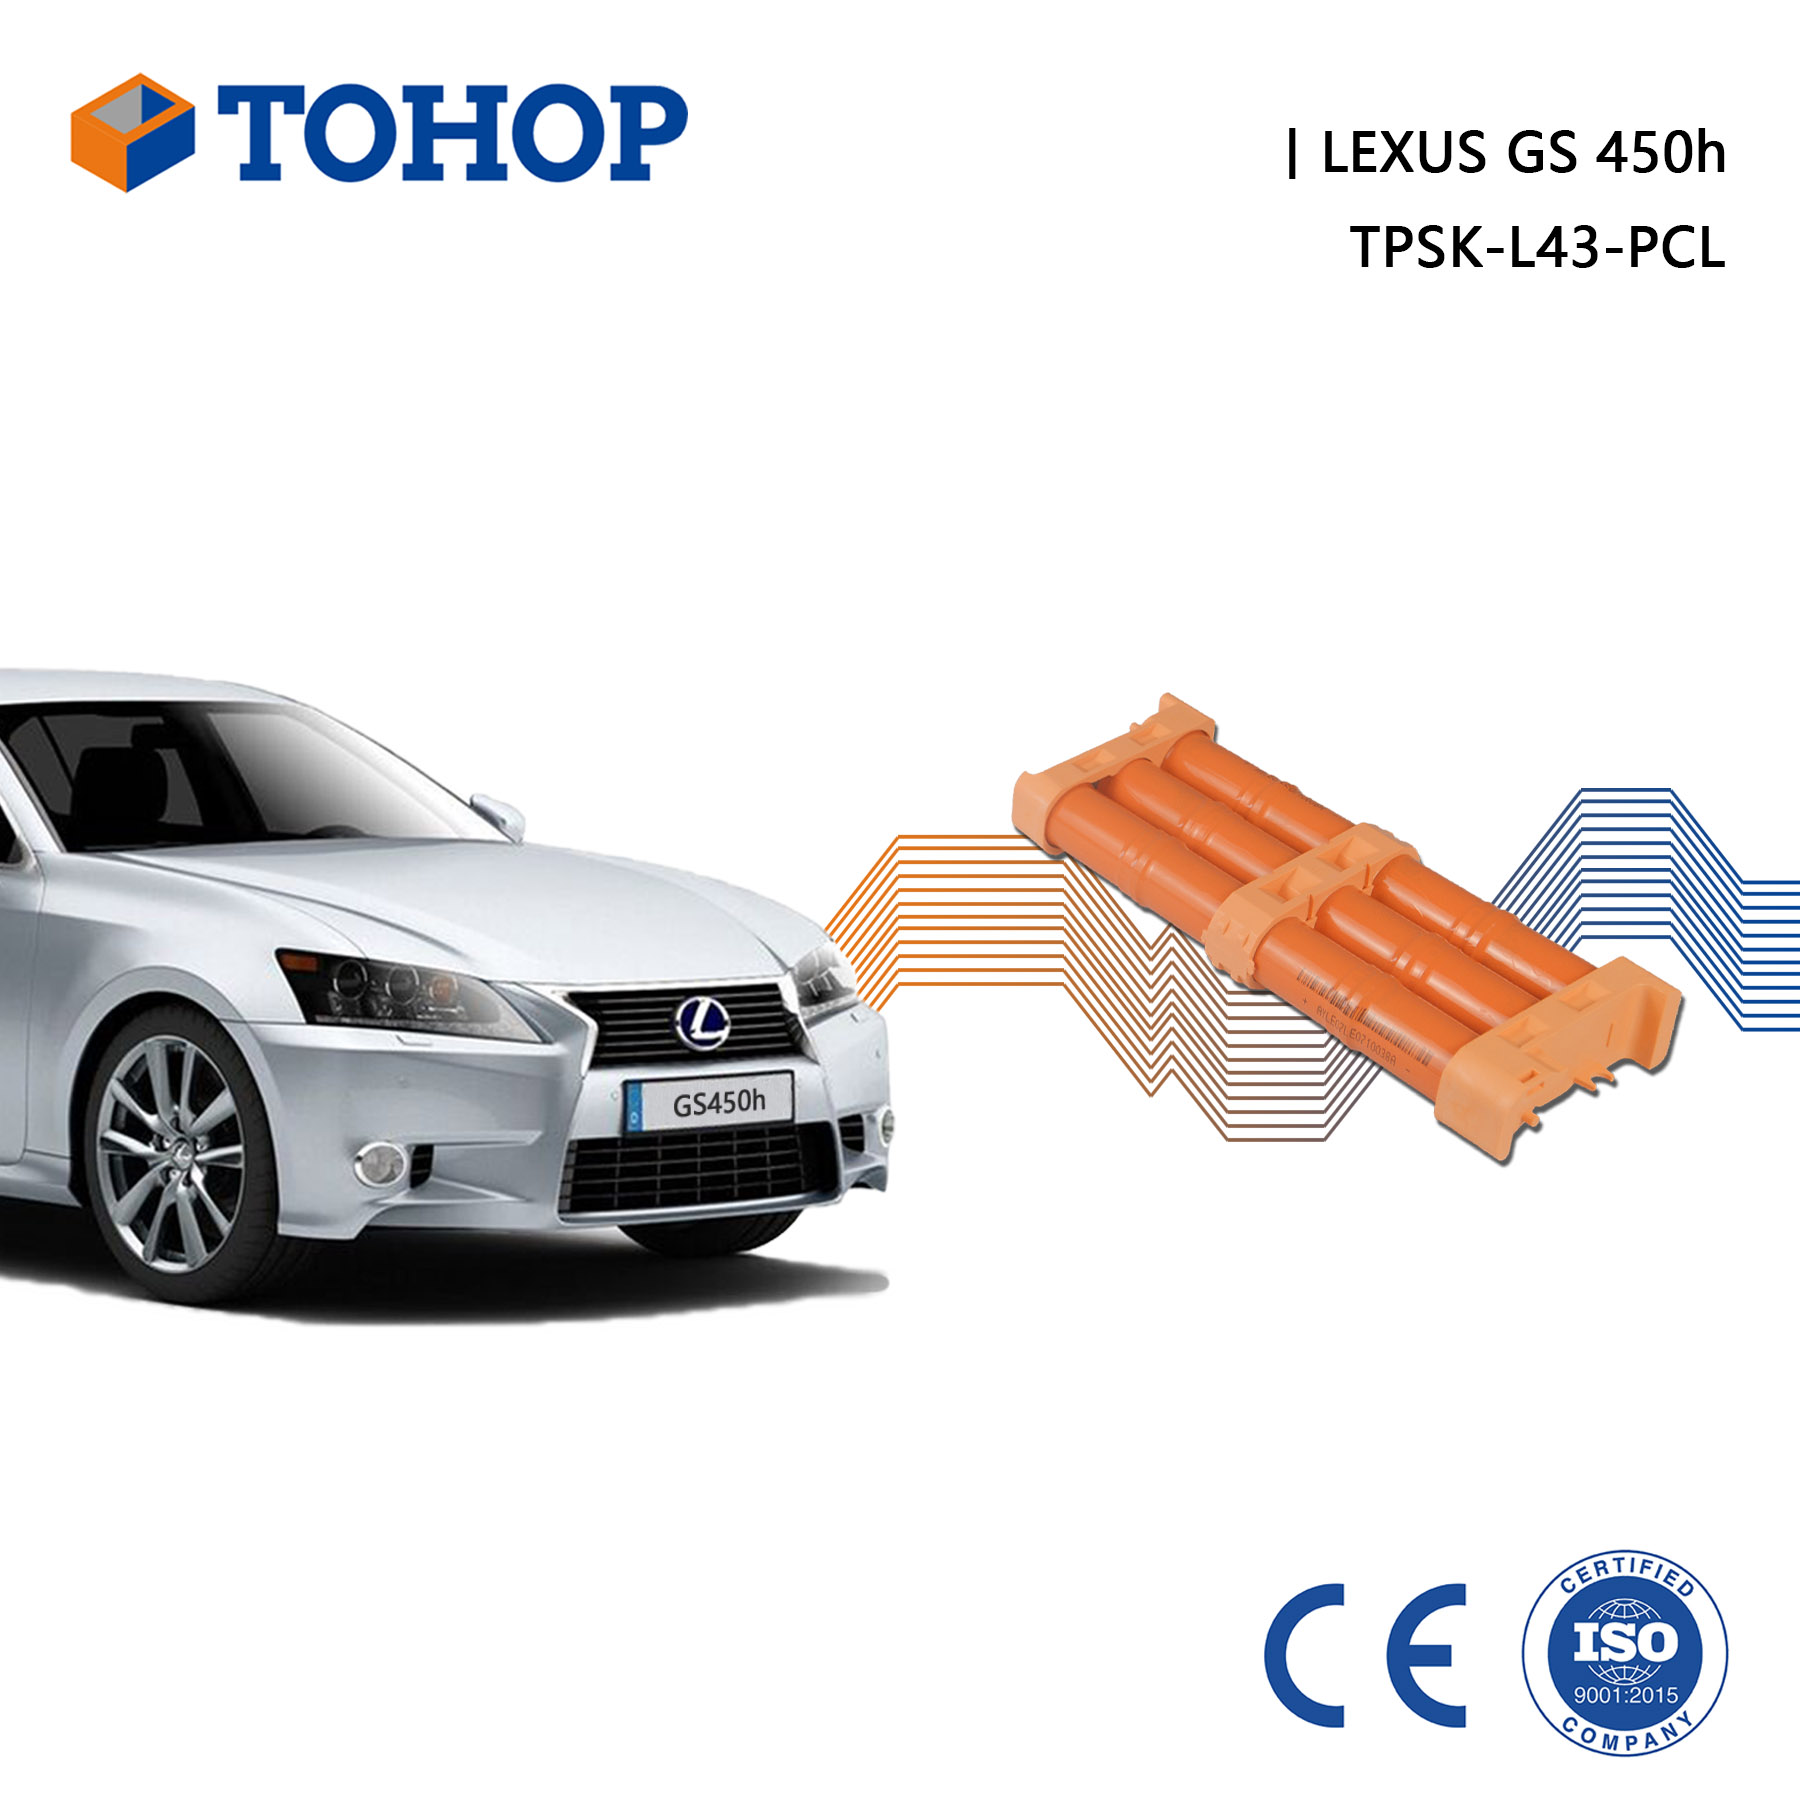 Batterie de voiture hybride rechargeable GS450h troisième génération S190 pour Lexus